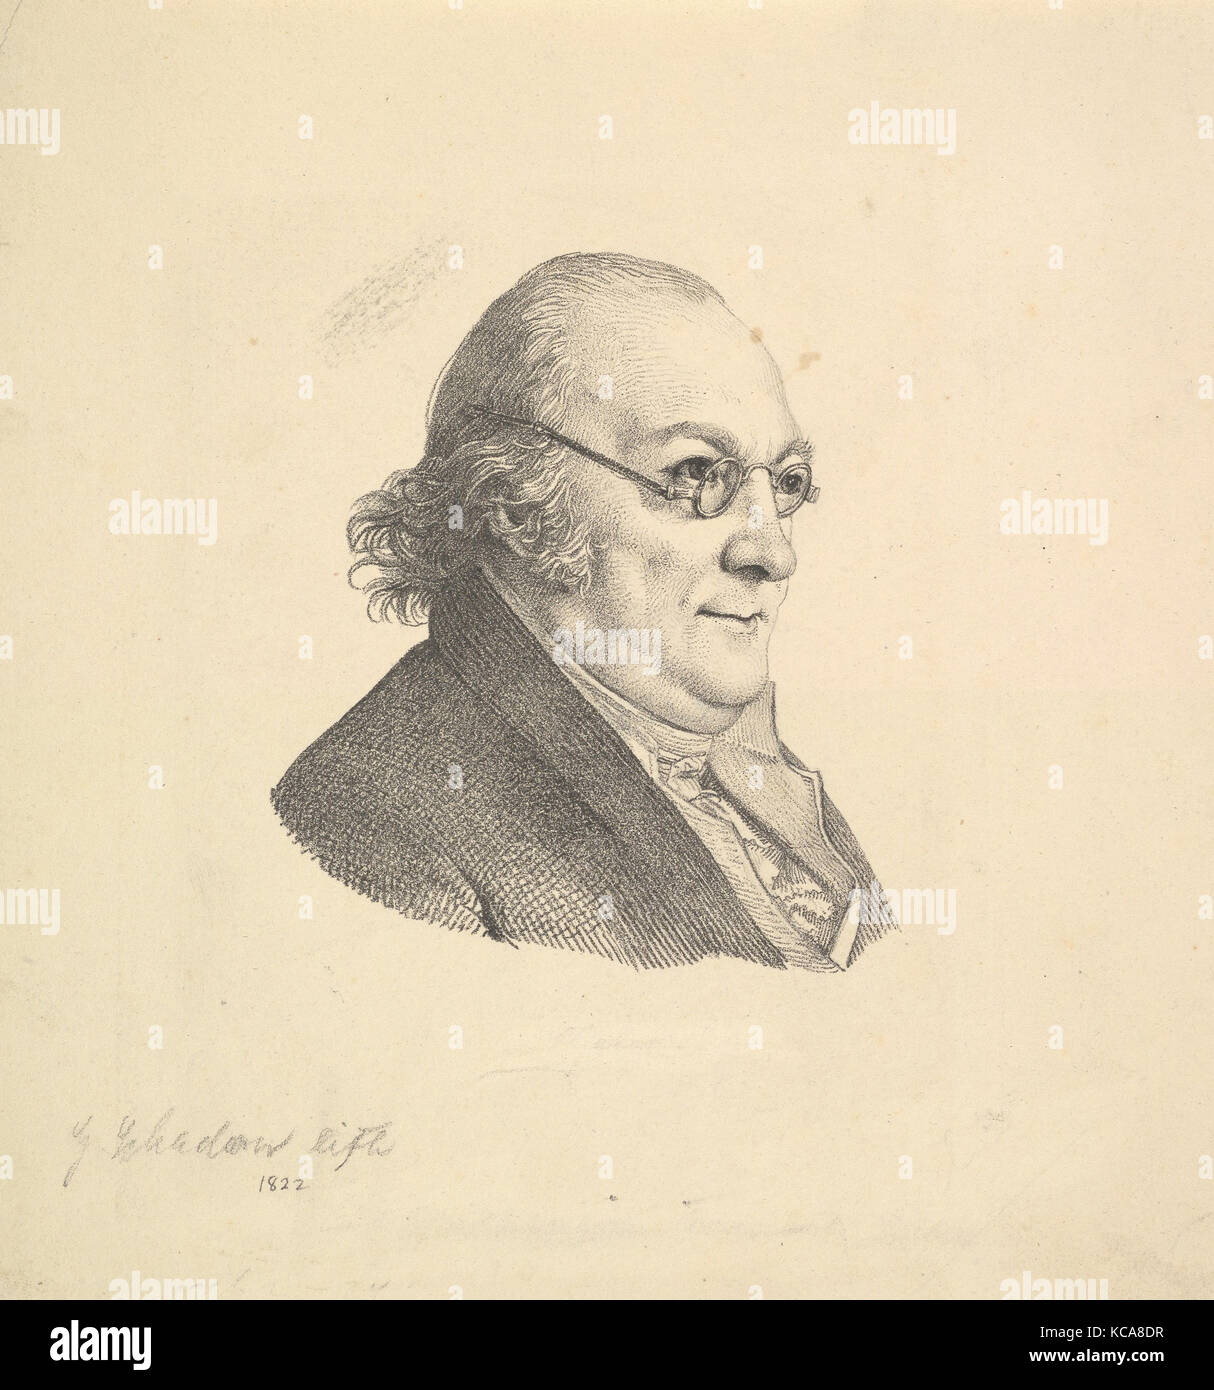 Portrait of Siegmund Wilhelm Wohlbruck (1762-1834), Johann Gottfried Schadow, n.d Stock Photo